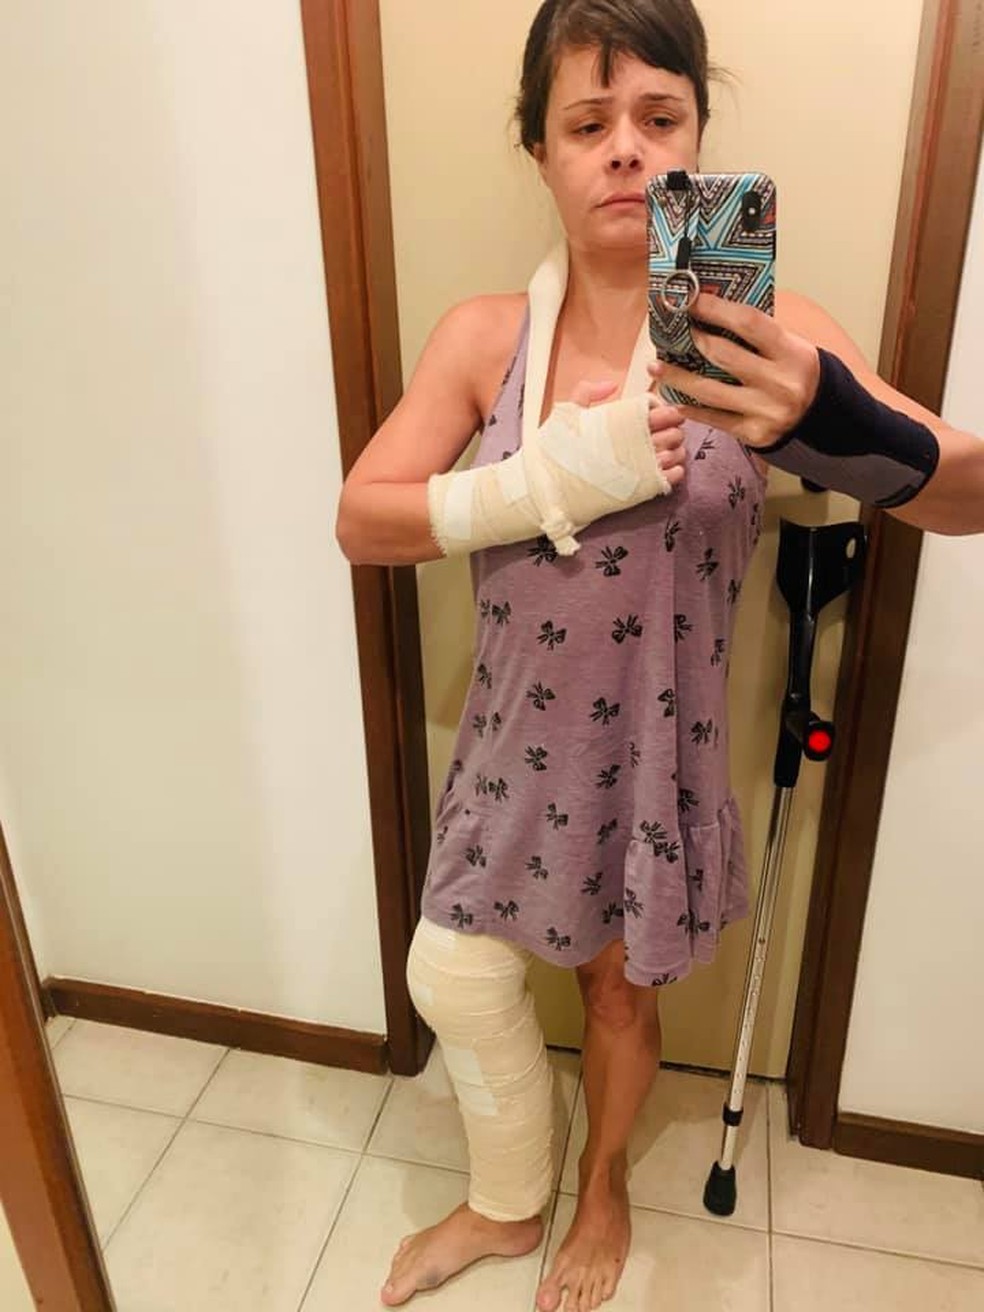 Ticyana logo após a agressão: mão pisoteada e joelho quebrado — Foto: Reprodução/redes sociais